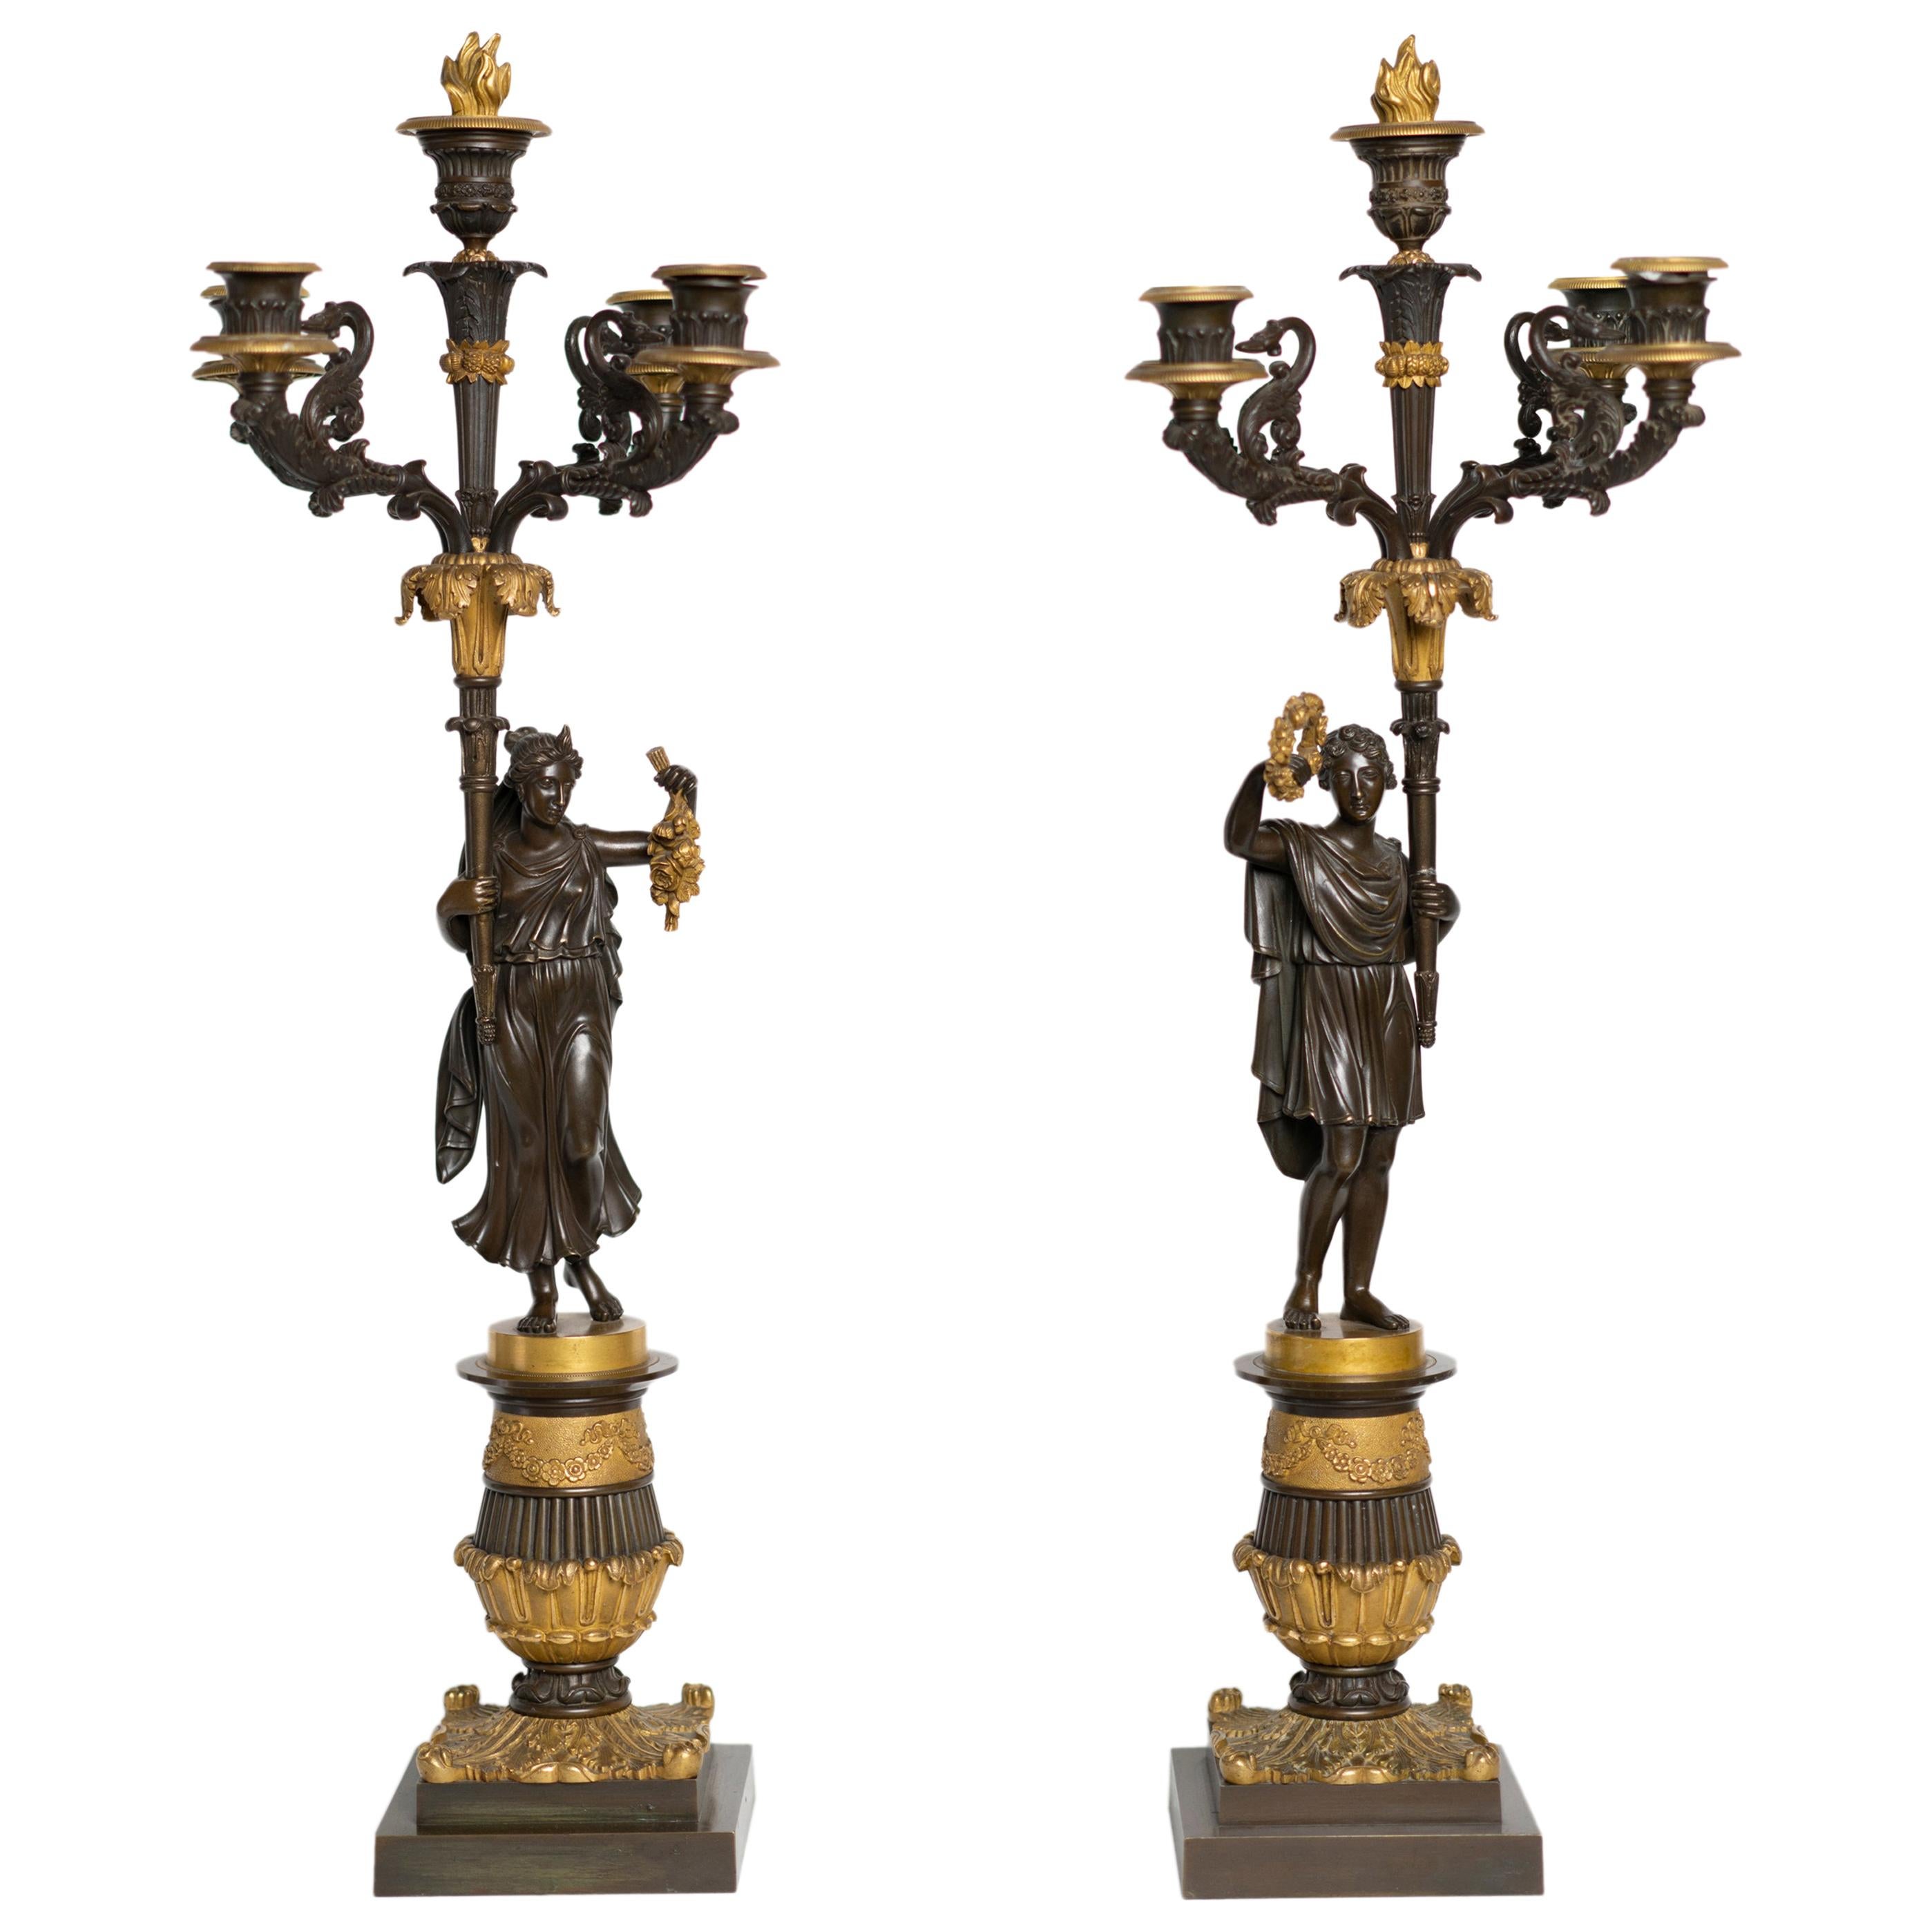 Paar vergoldete und patinierte Bronzekandelaber aus der Zeit Karls X. eines römischen Paares